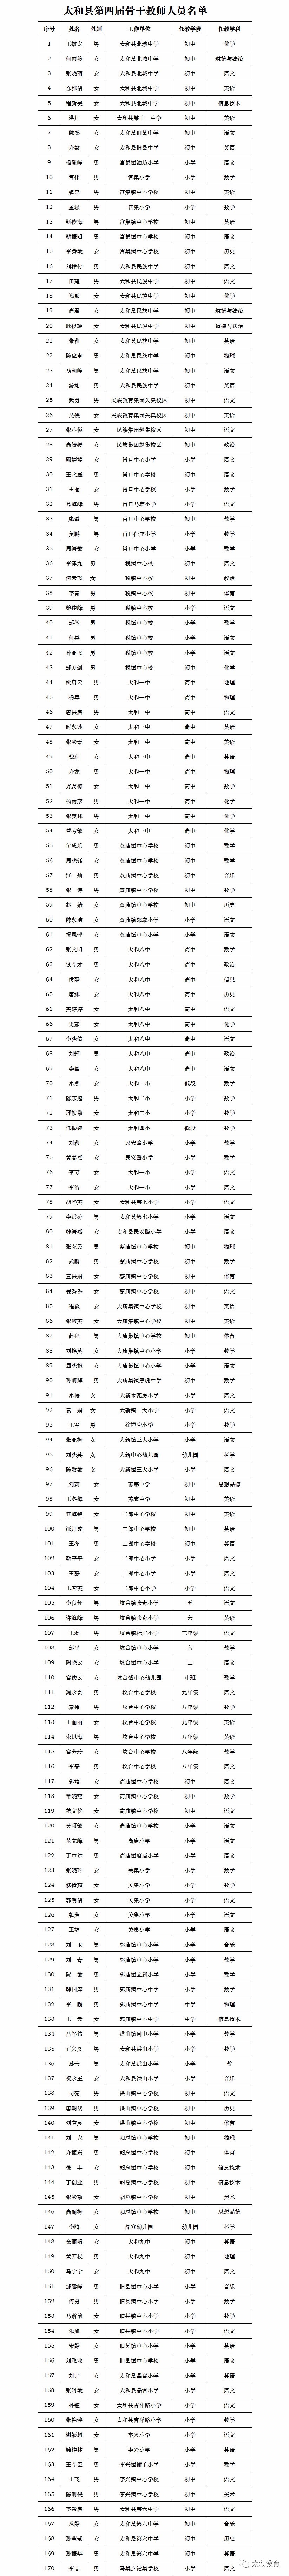 名单如下2017年12月26日太和县教育局附:太和县第四届骨干教师人员